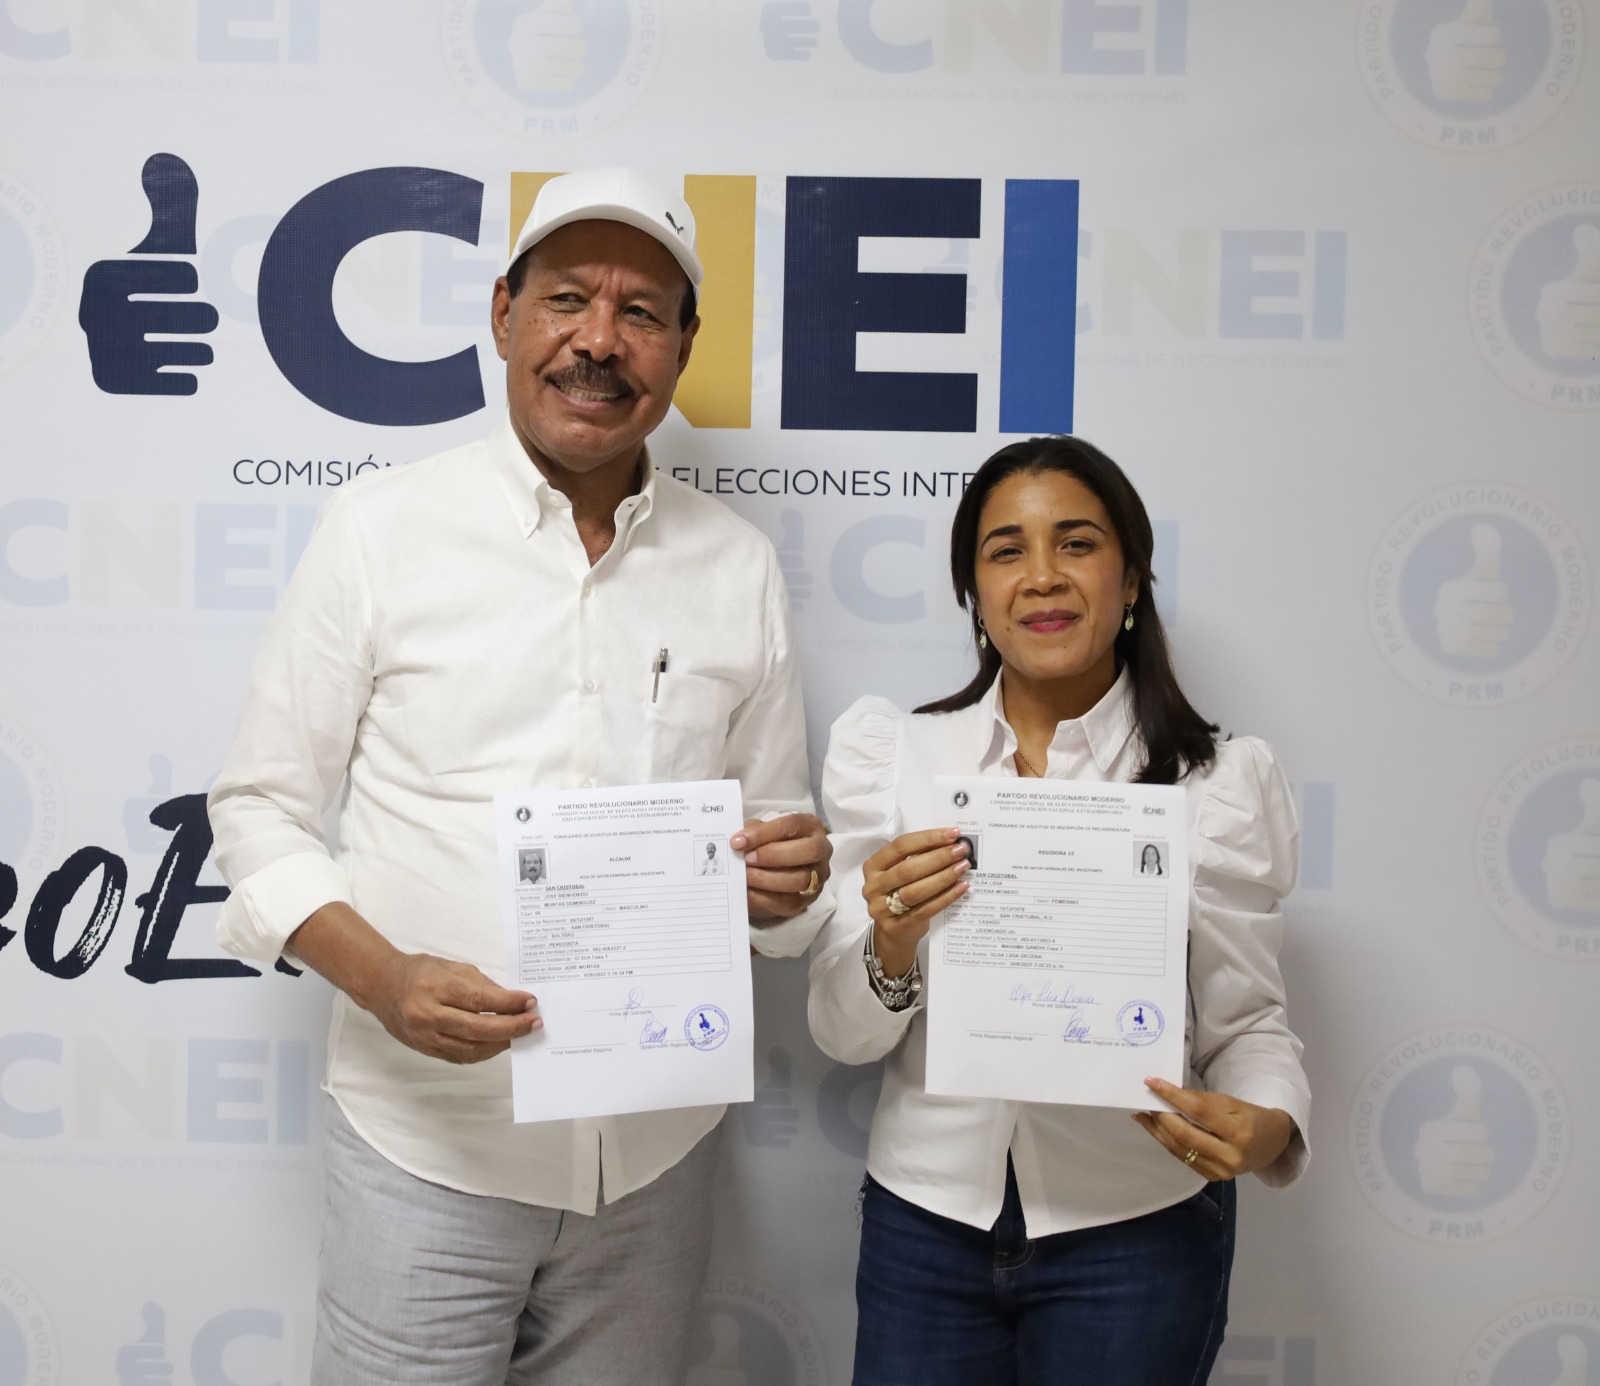 José Montás: “Misión cumplida, dí el primer paso para la oficialización de mi candidatura cuatro más en la alcaldía de SC”